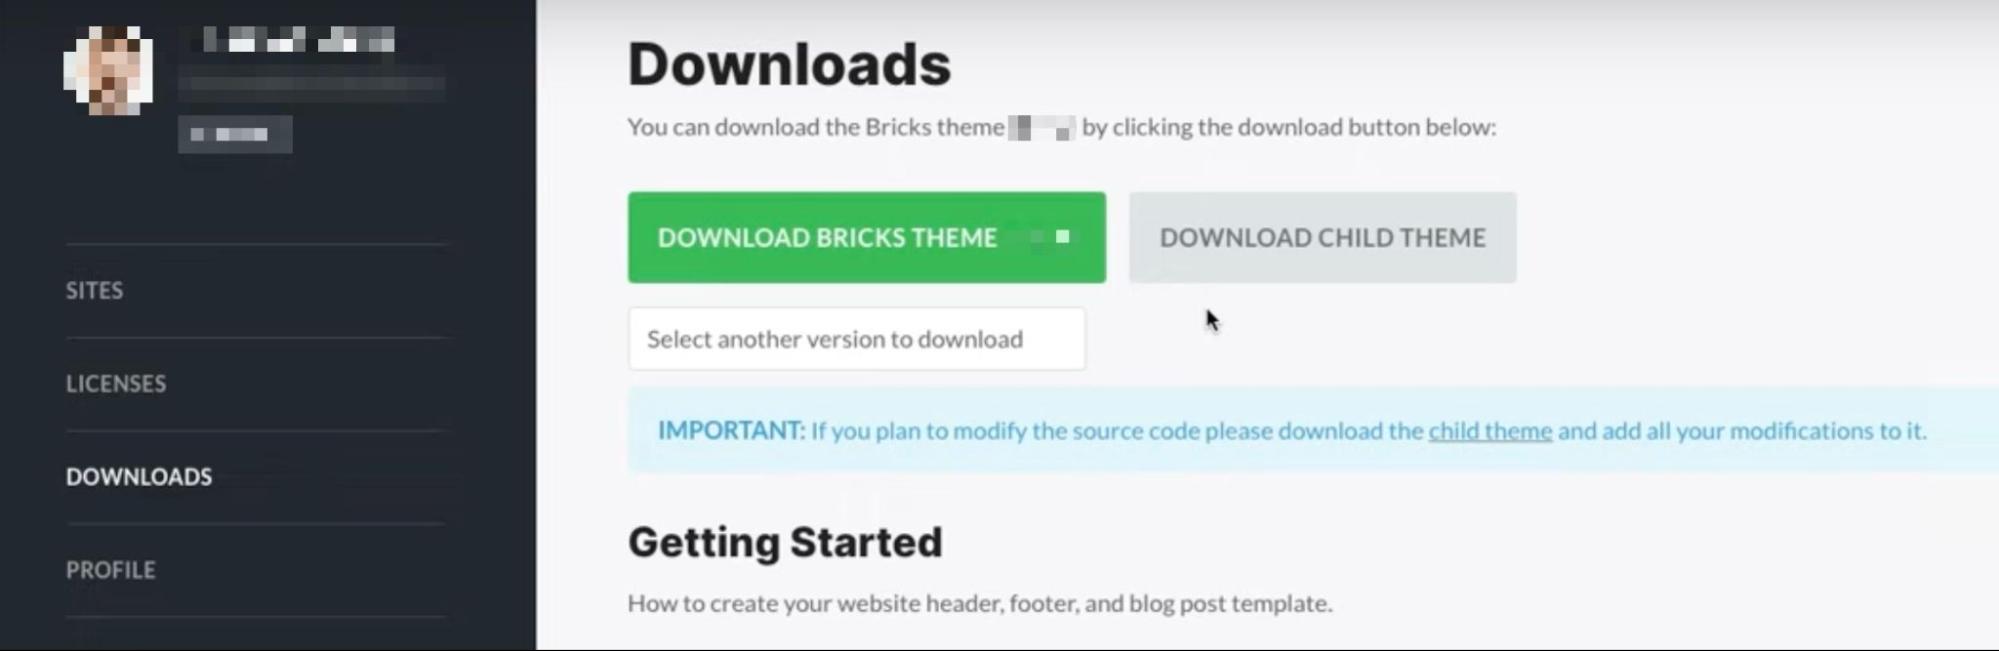 Bricks dashboard om het Bricks thema te downloaden.